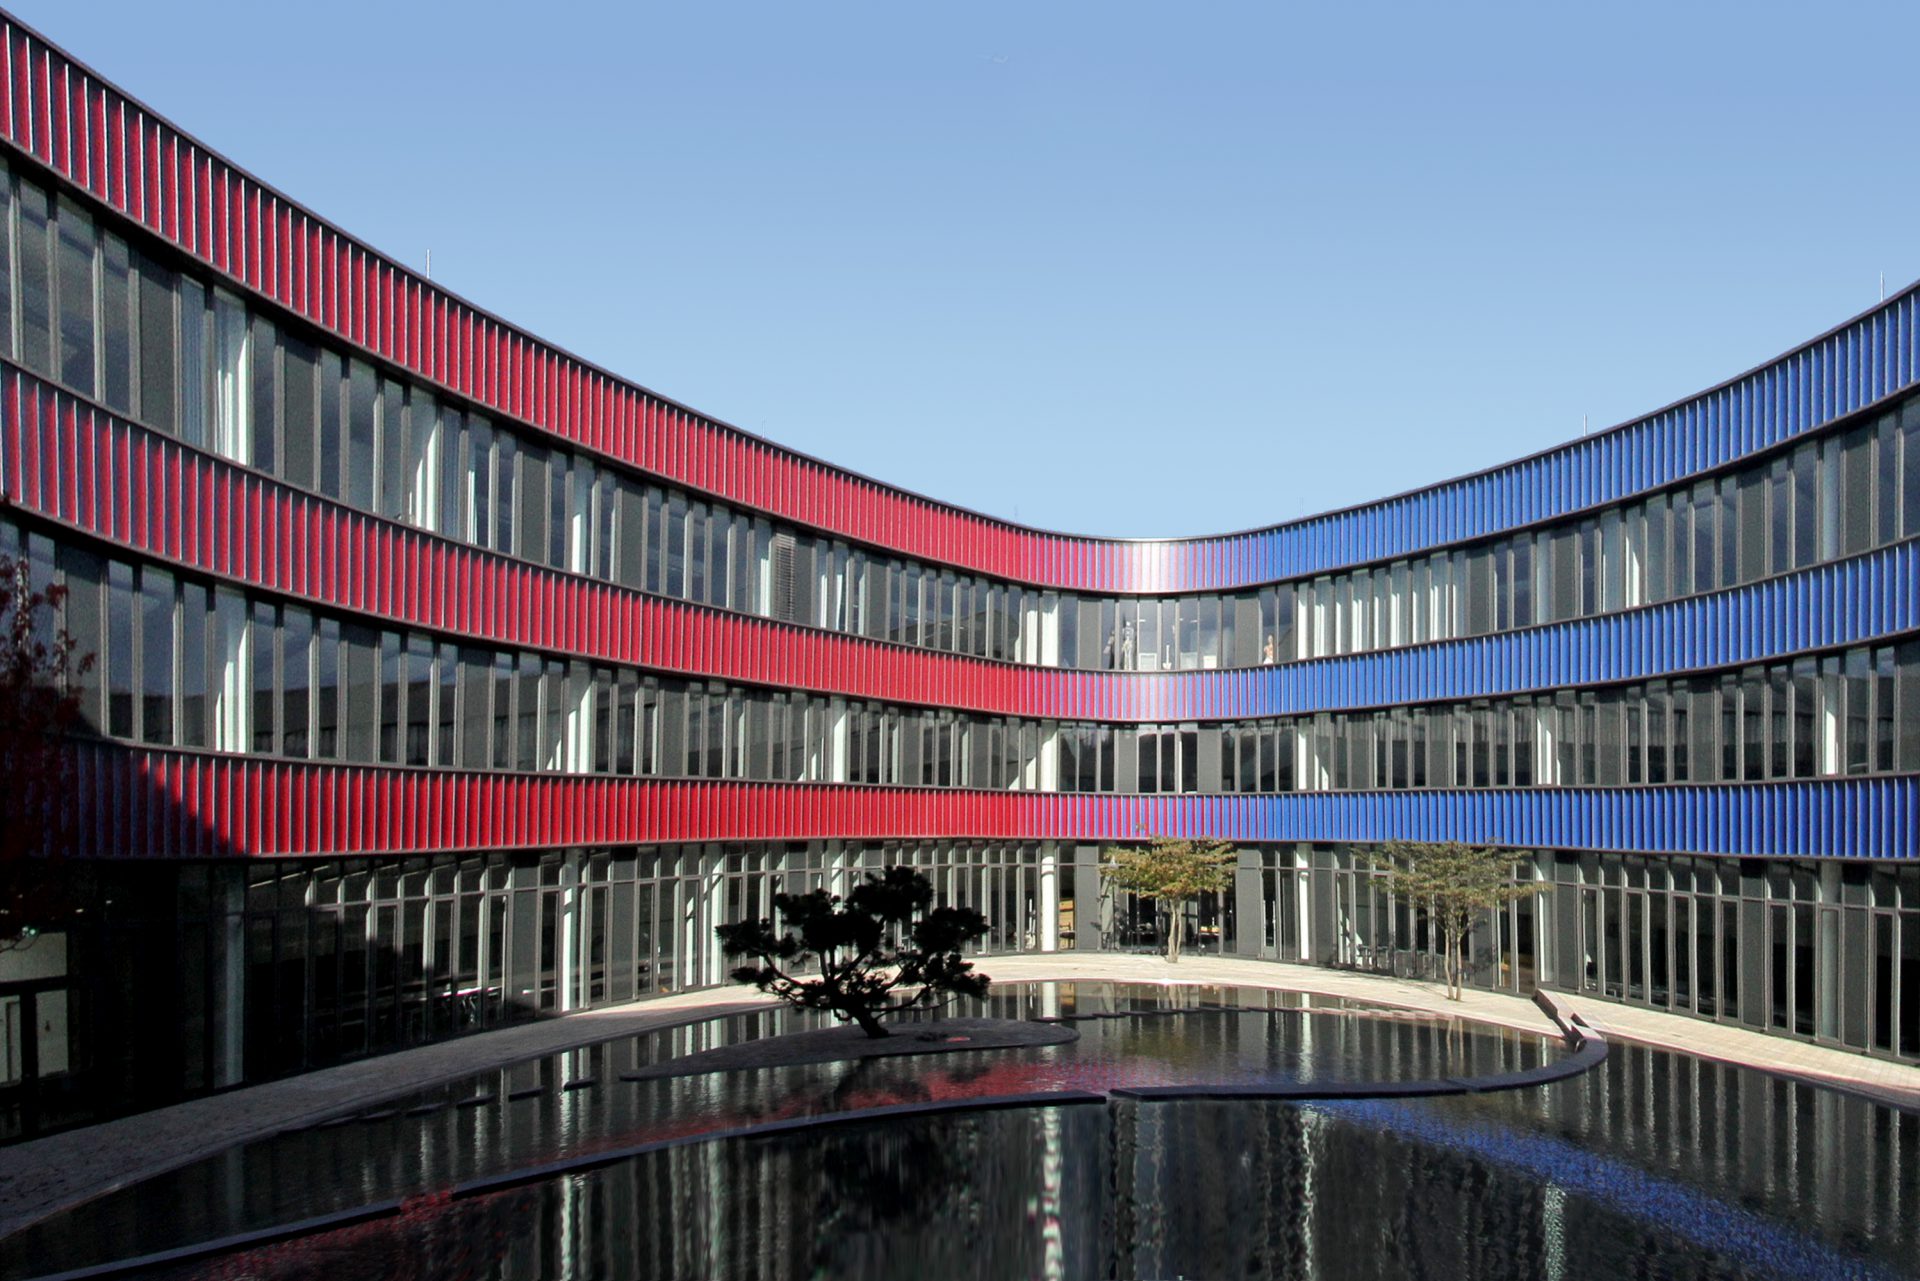 Neues Gymnasium Bochum